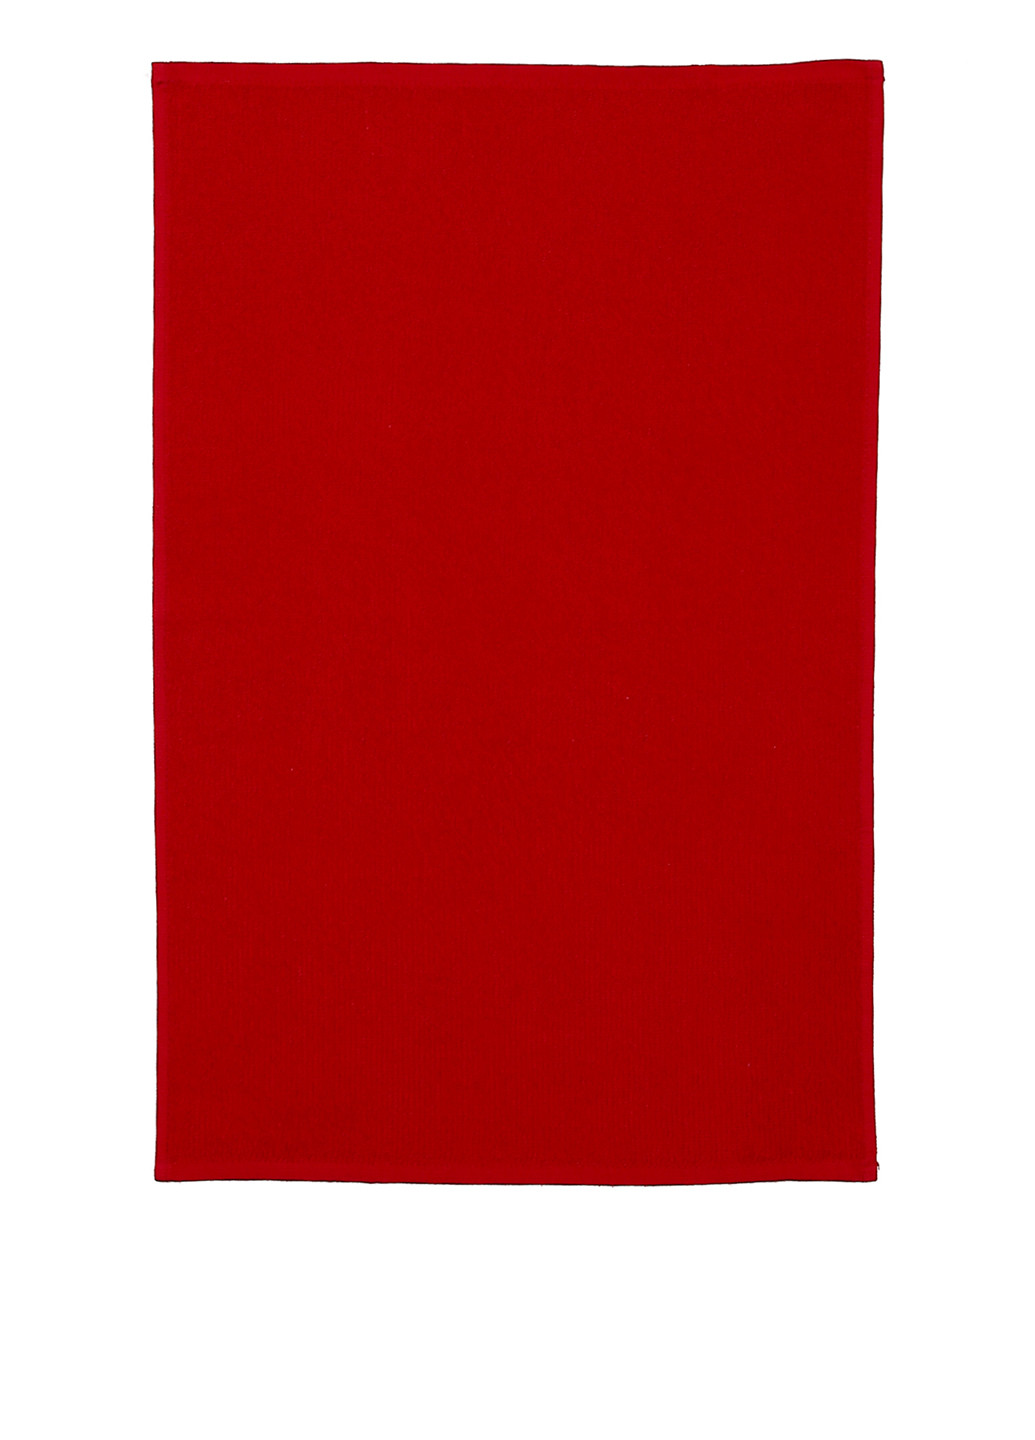 Maisonette полотенце (2 шт.), 40х60 см полоска красный производство - Турция